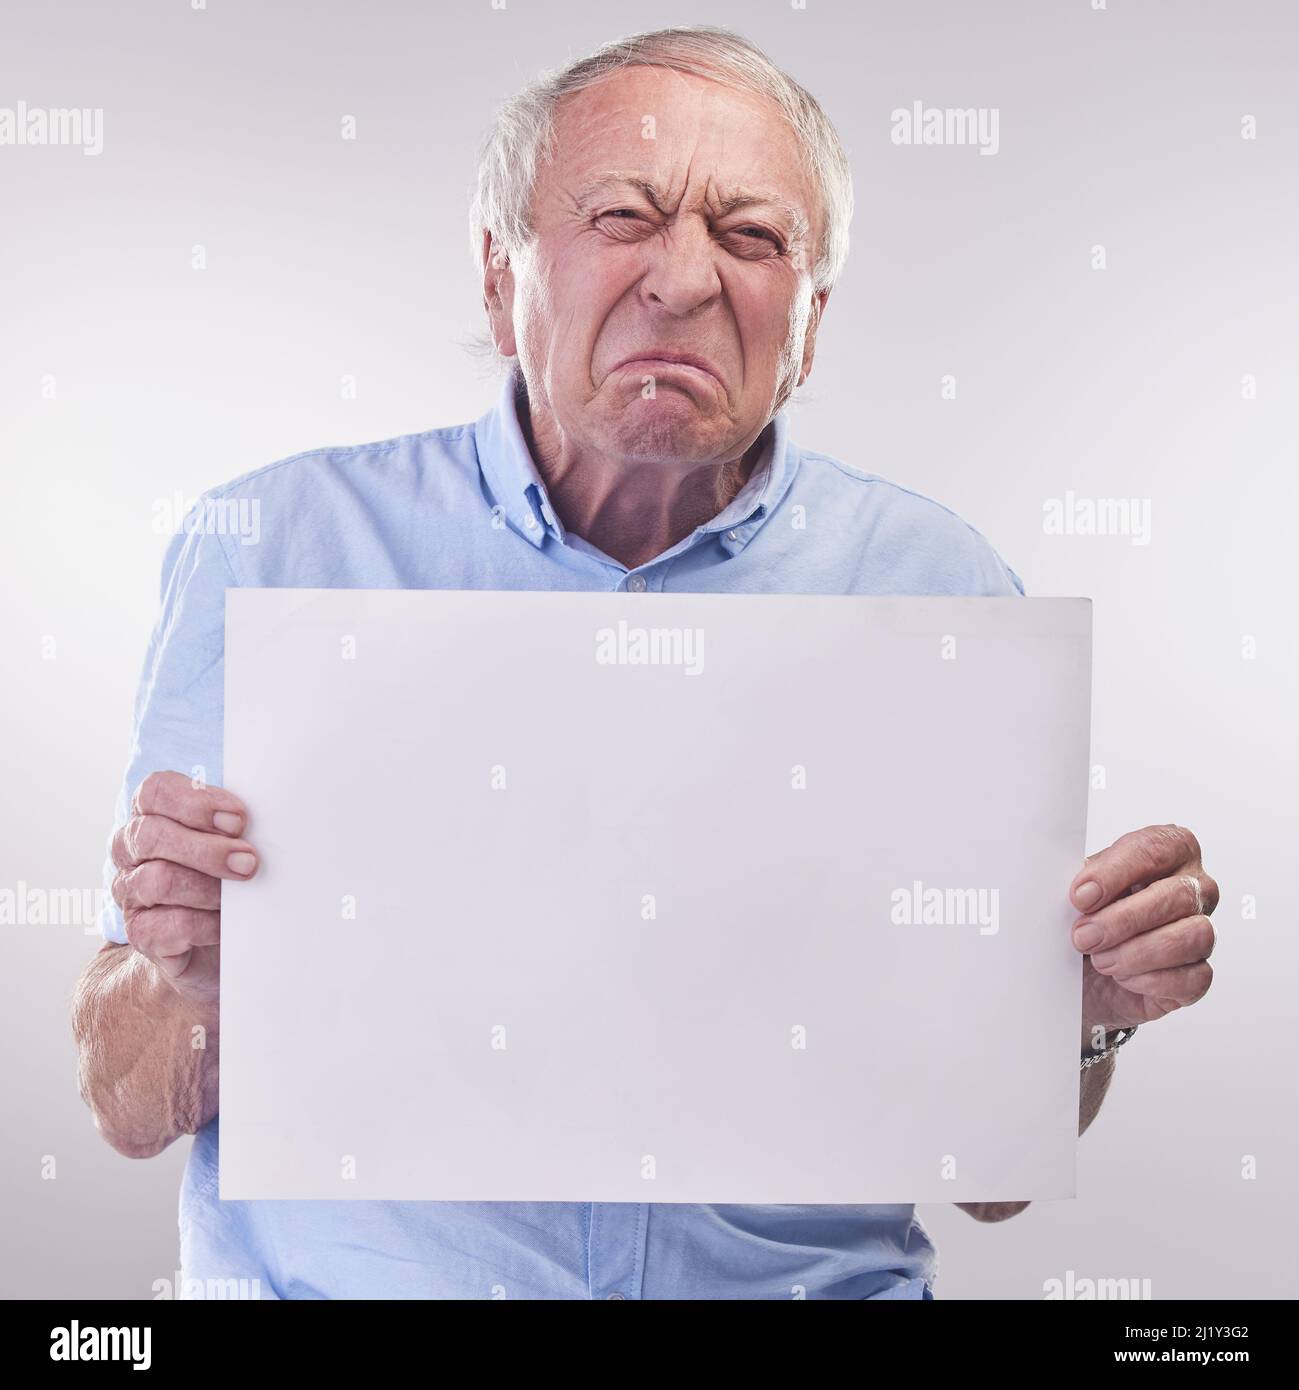 Qui êtes-vous un vieil homme grincheux ? Studio photo d'un homme âgé tenant un panneau vierge et regardant malheureux sur fond gris. Banque D'Images